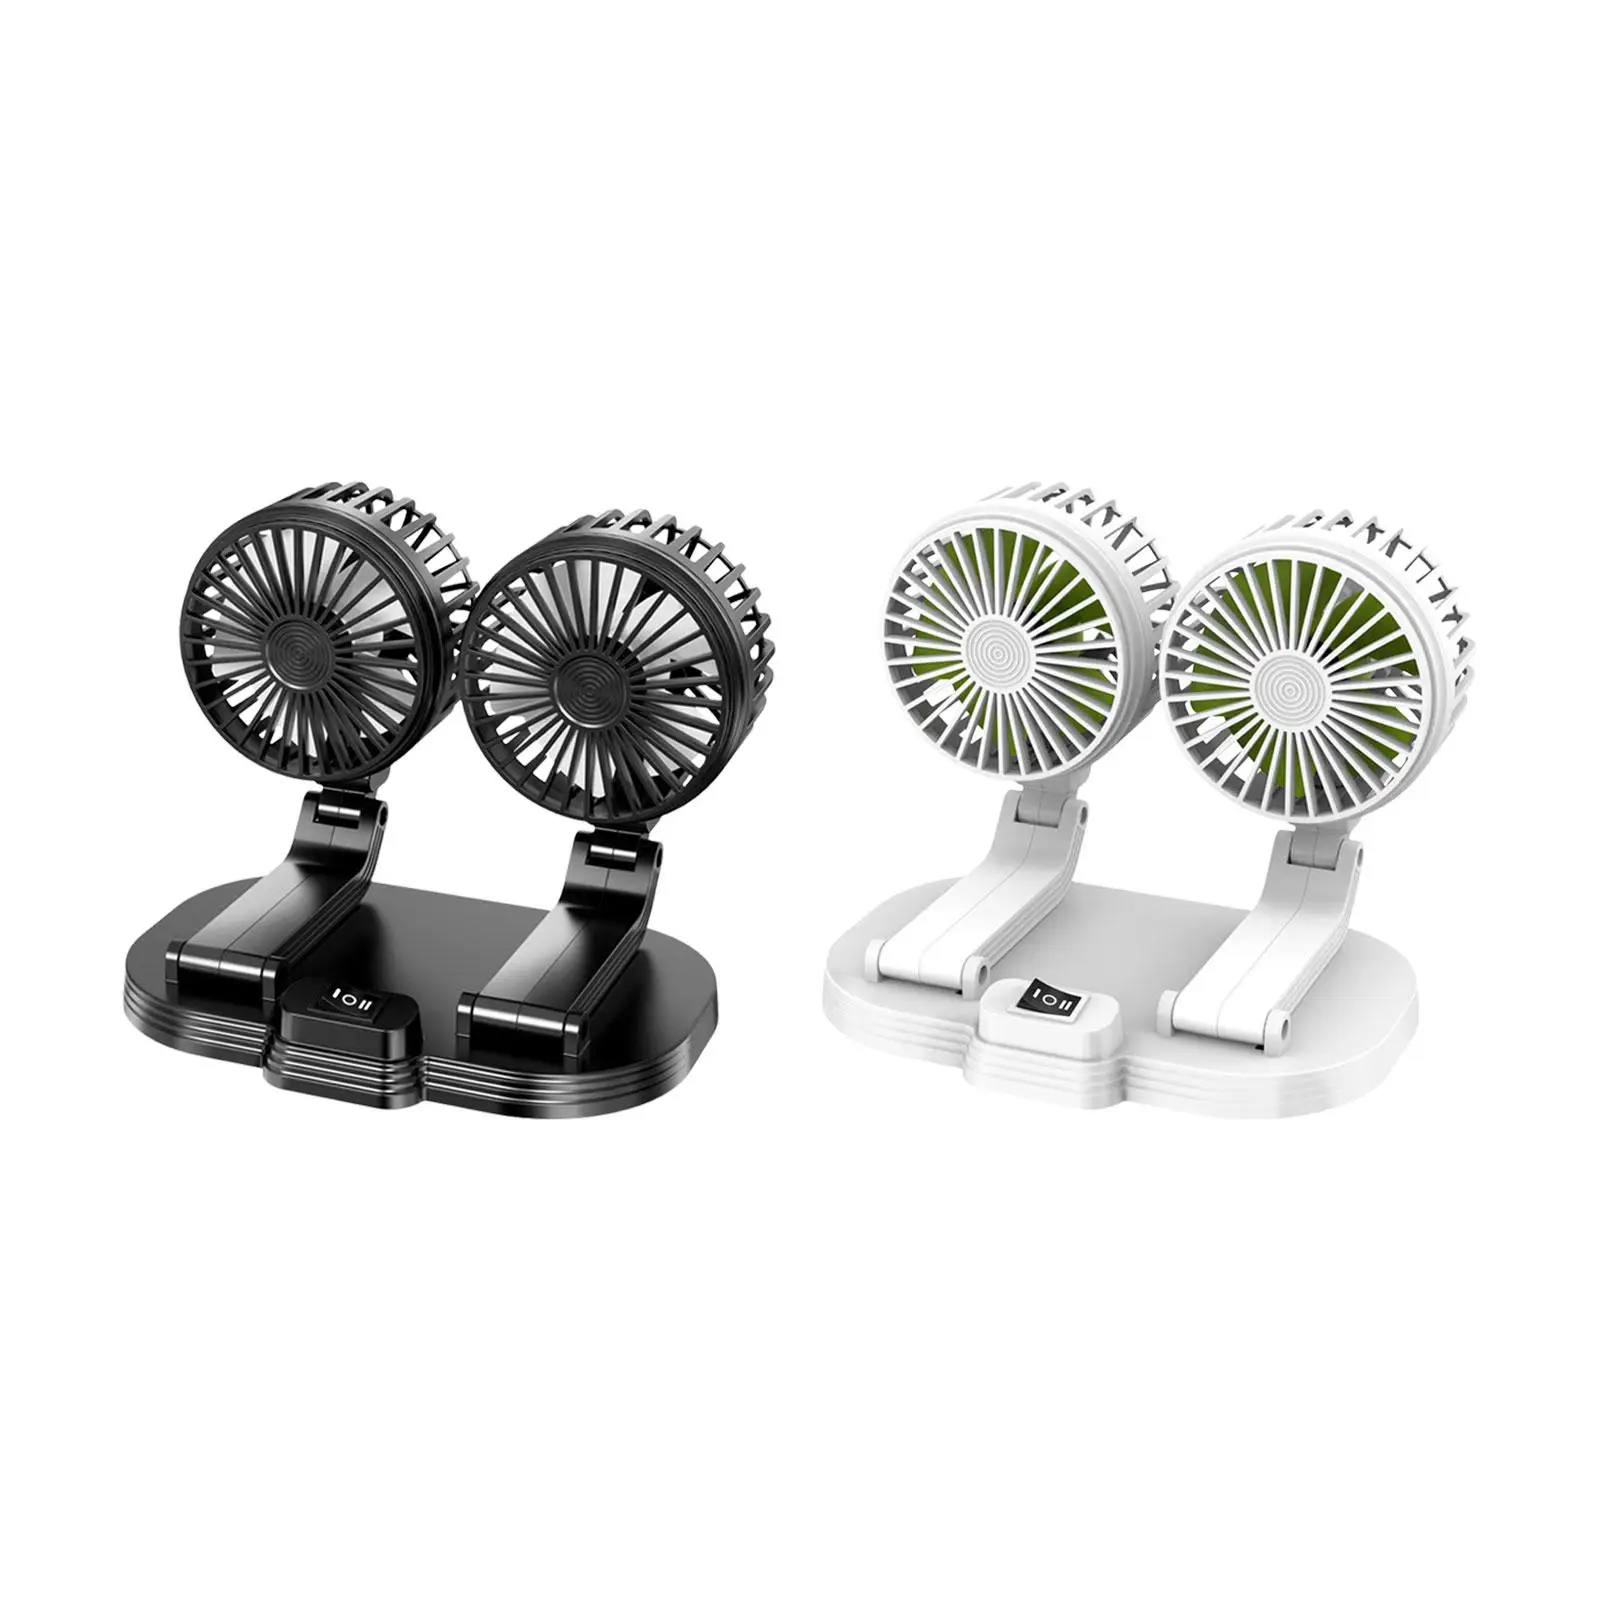 Car Fan Dual Head Supplies Air Circulation Fan for Automobile Boat Home